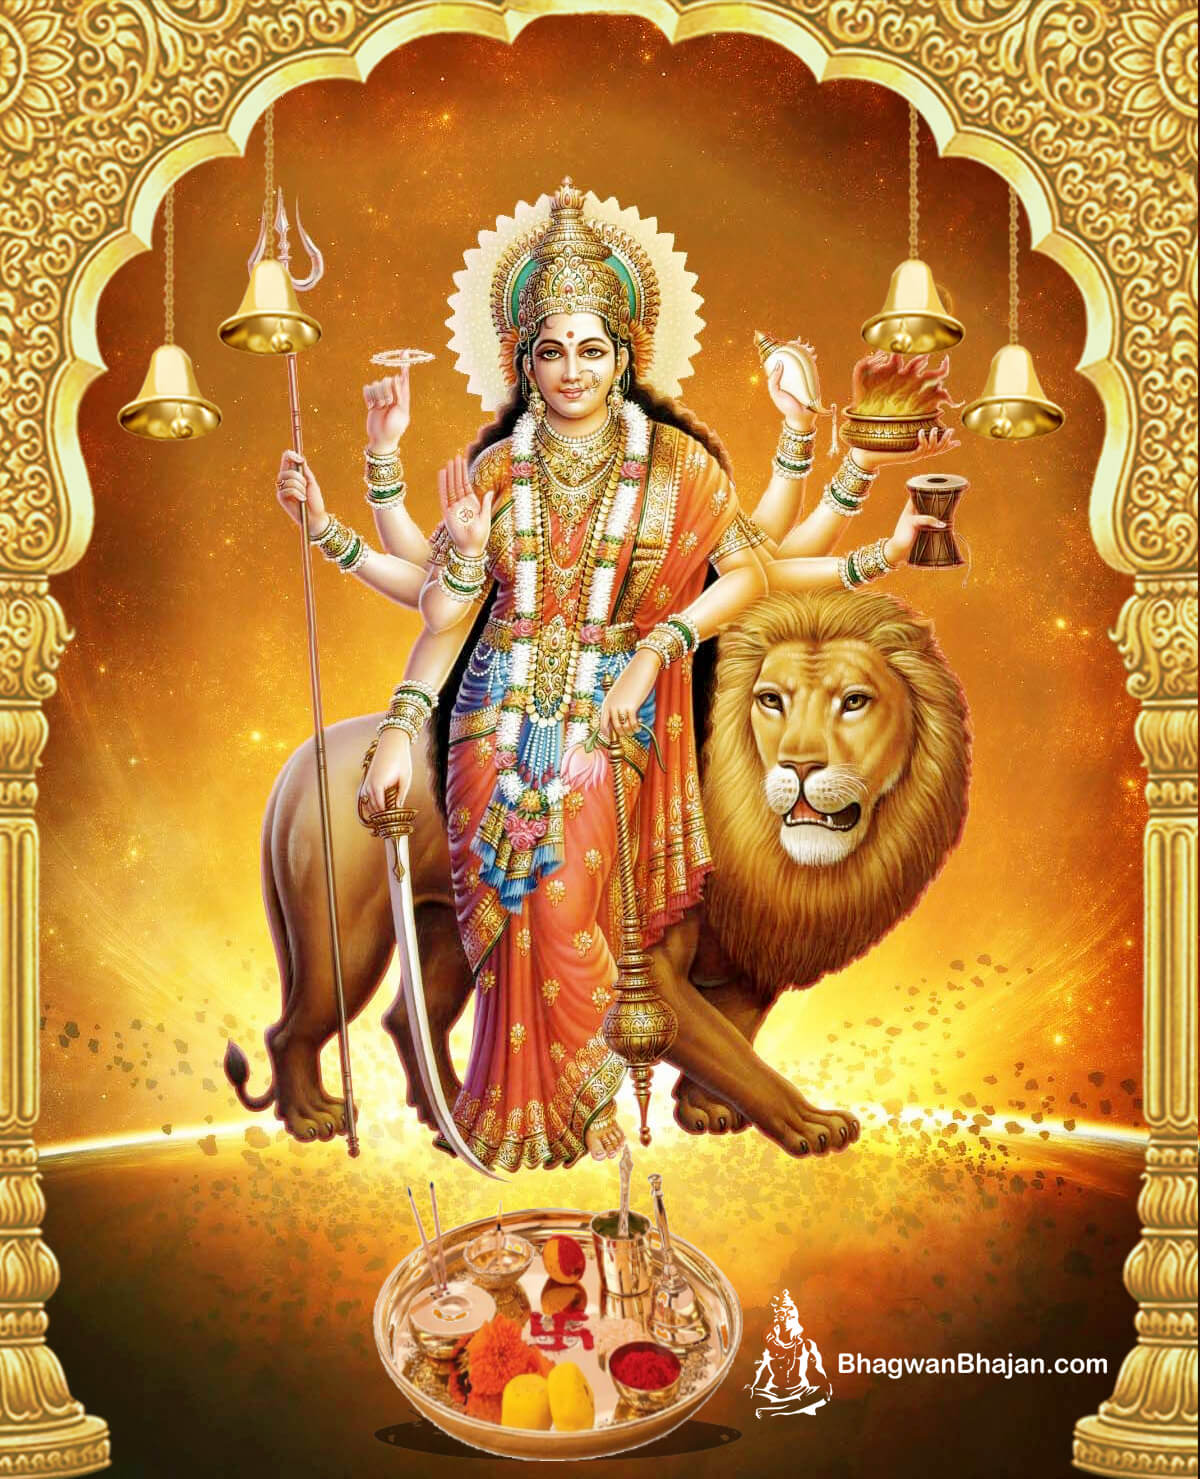 Maa Durga HD Wallpaper | Durga Mata Photos | Durga Ji Images ...